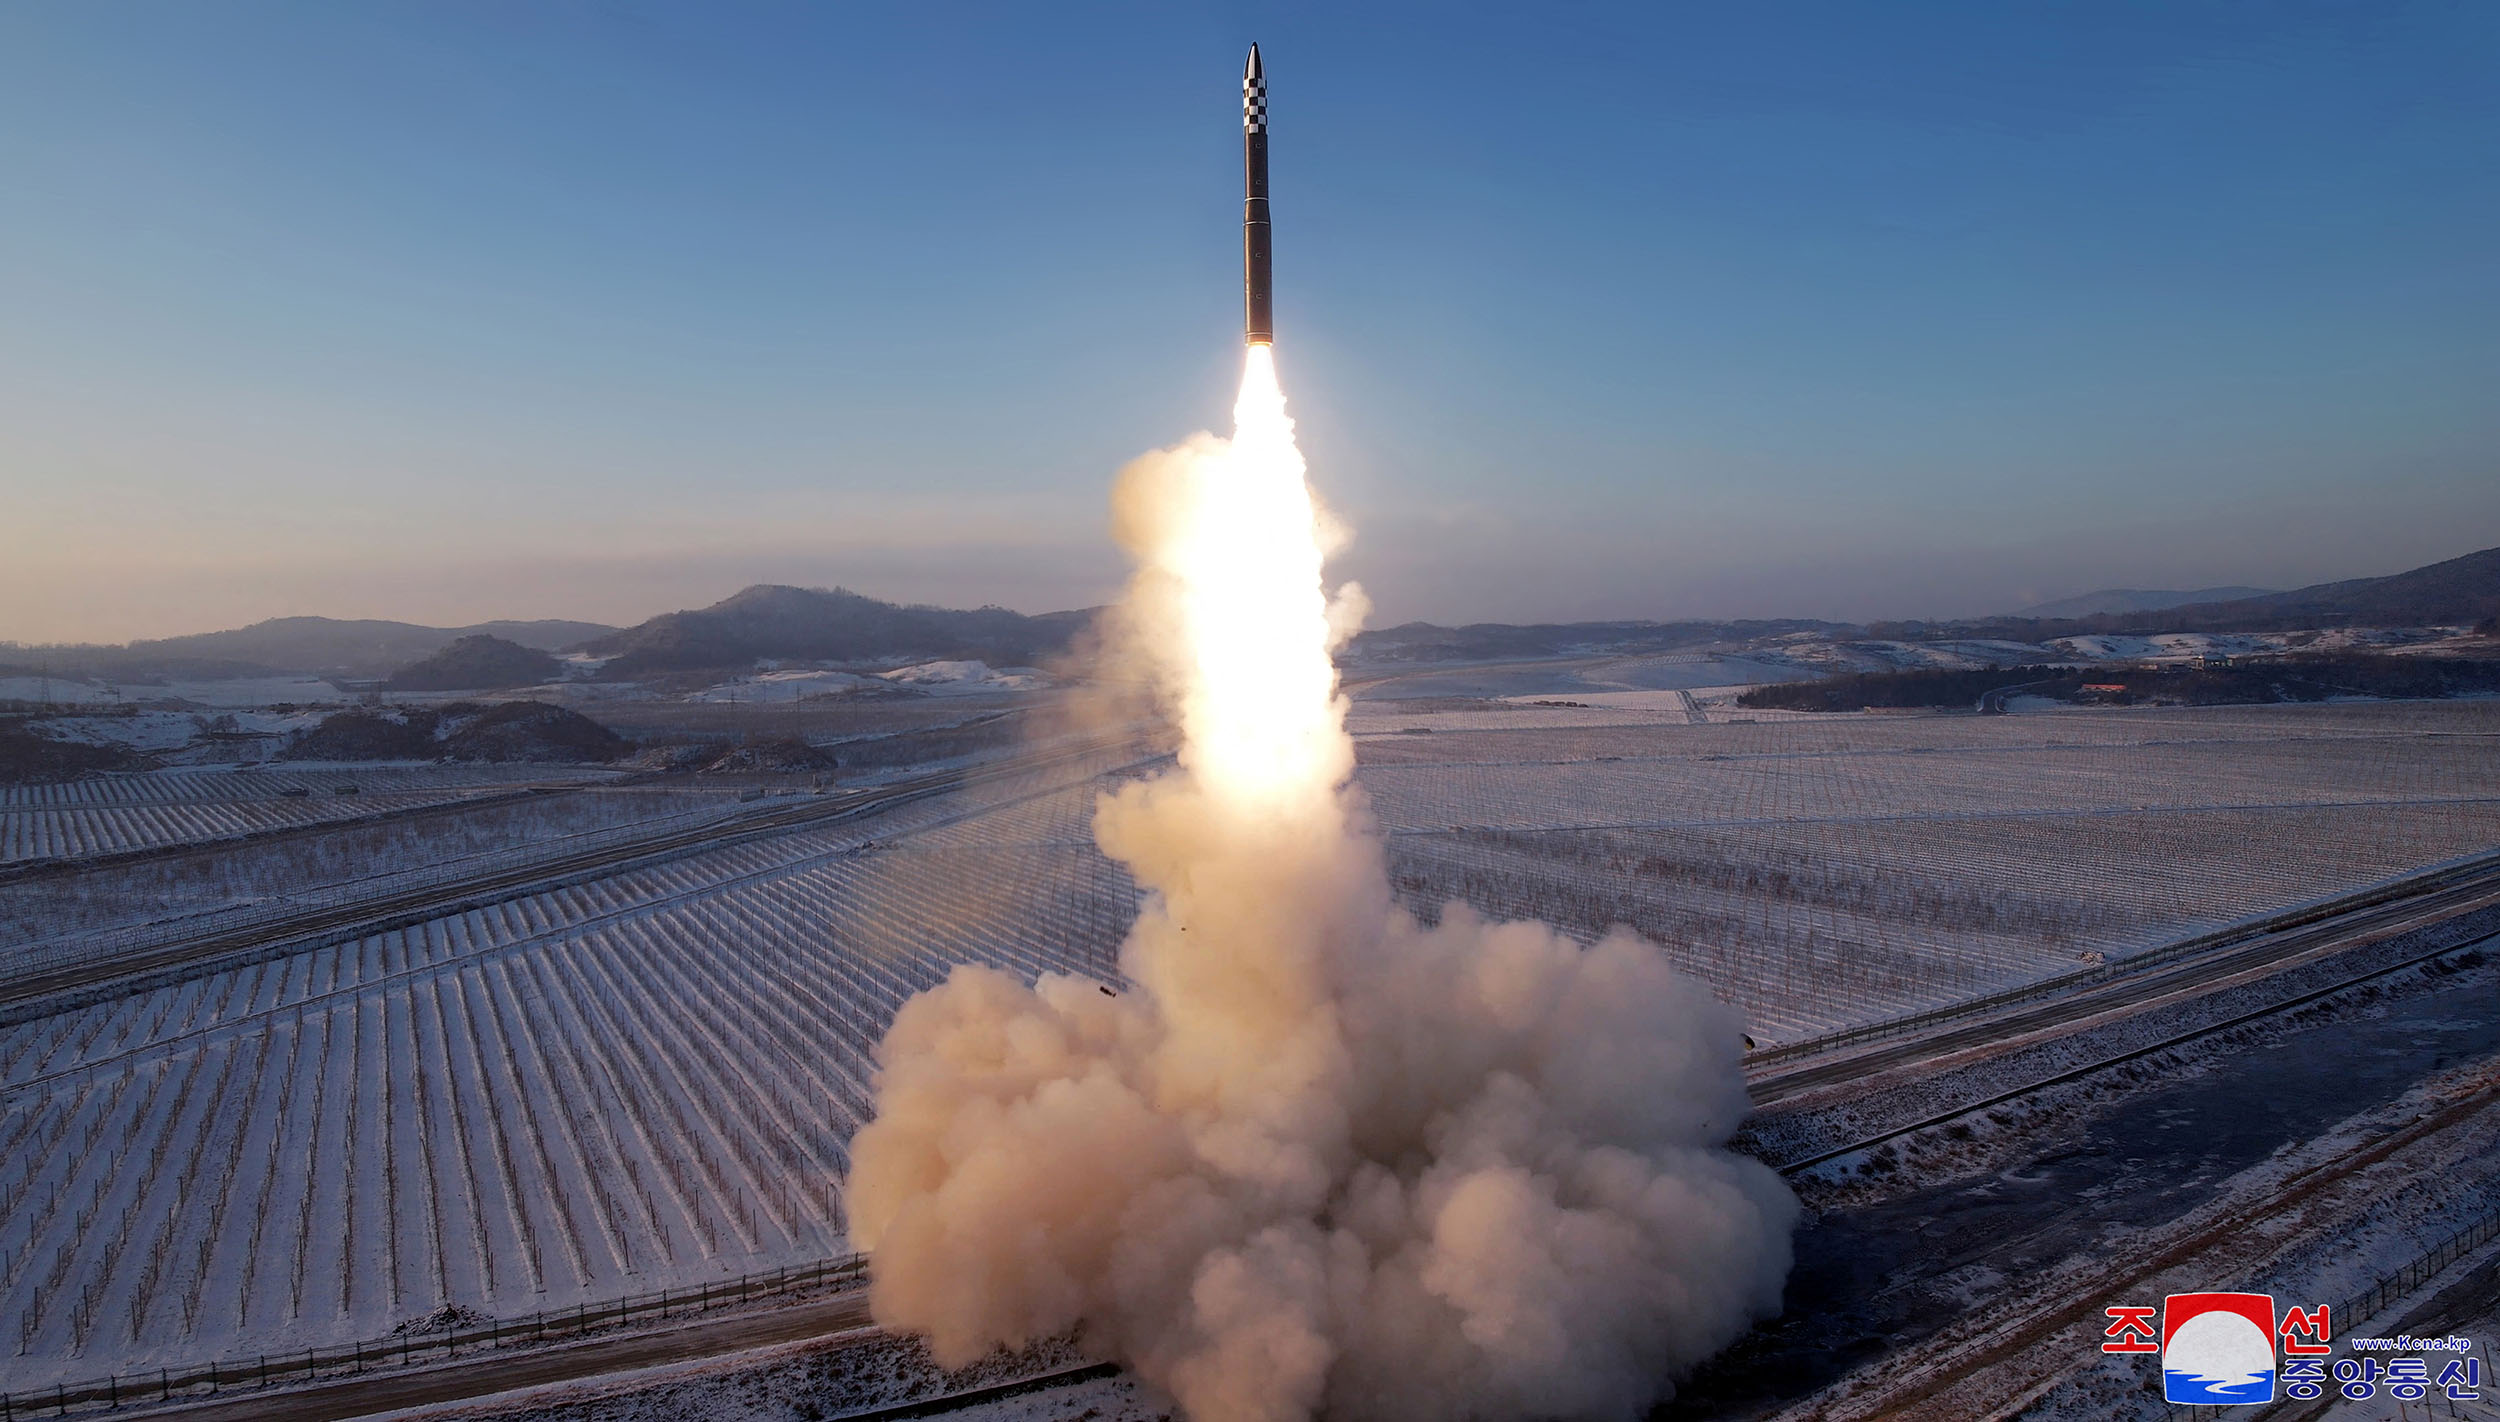 بلهجة تهديد لواشنطن .. كوريا الشمالية تكشف تفاصيل إطلاق صاروخ باليستي عابر للقارات